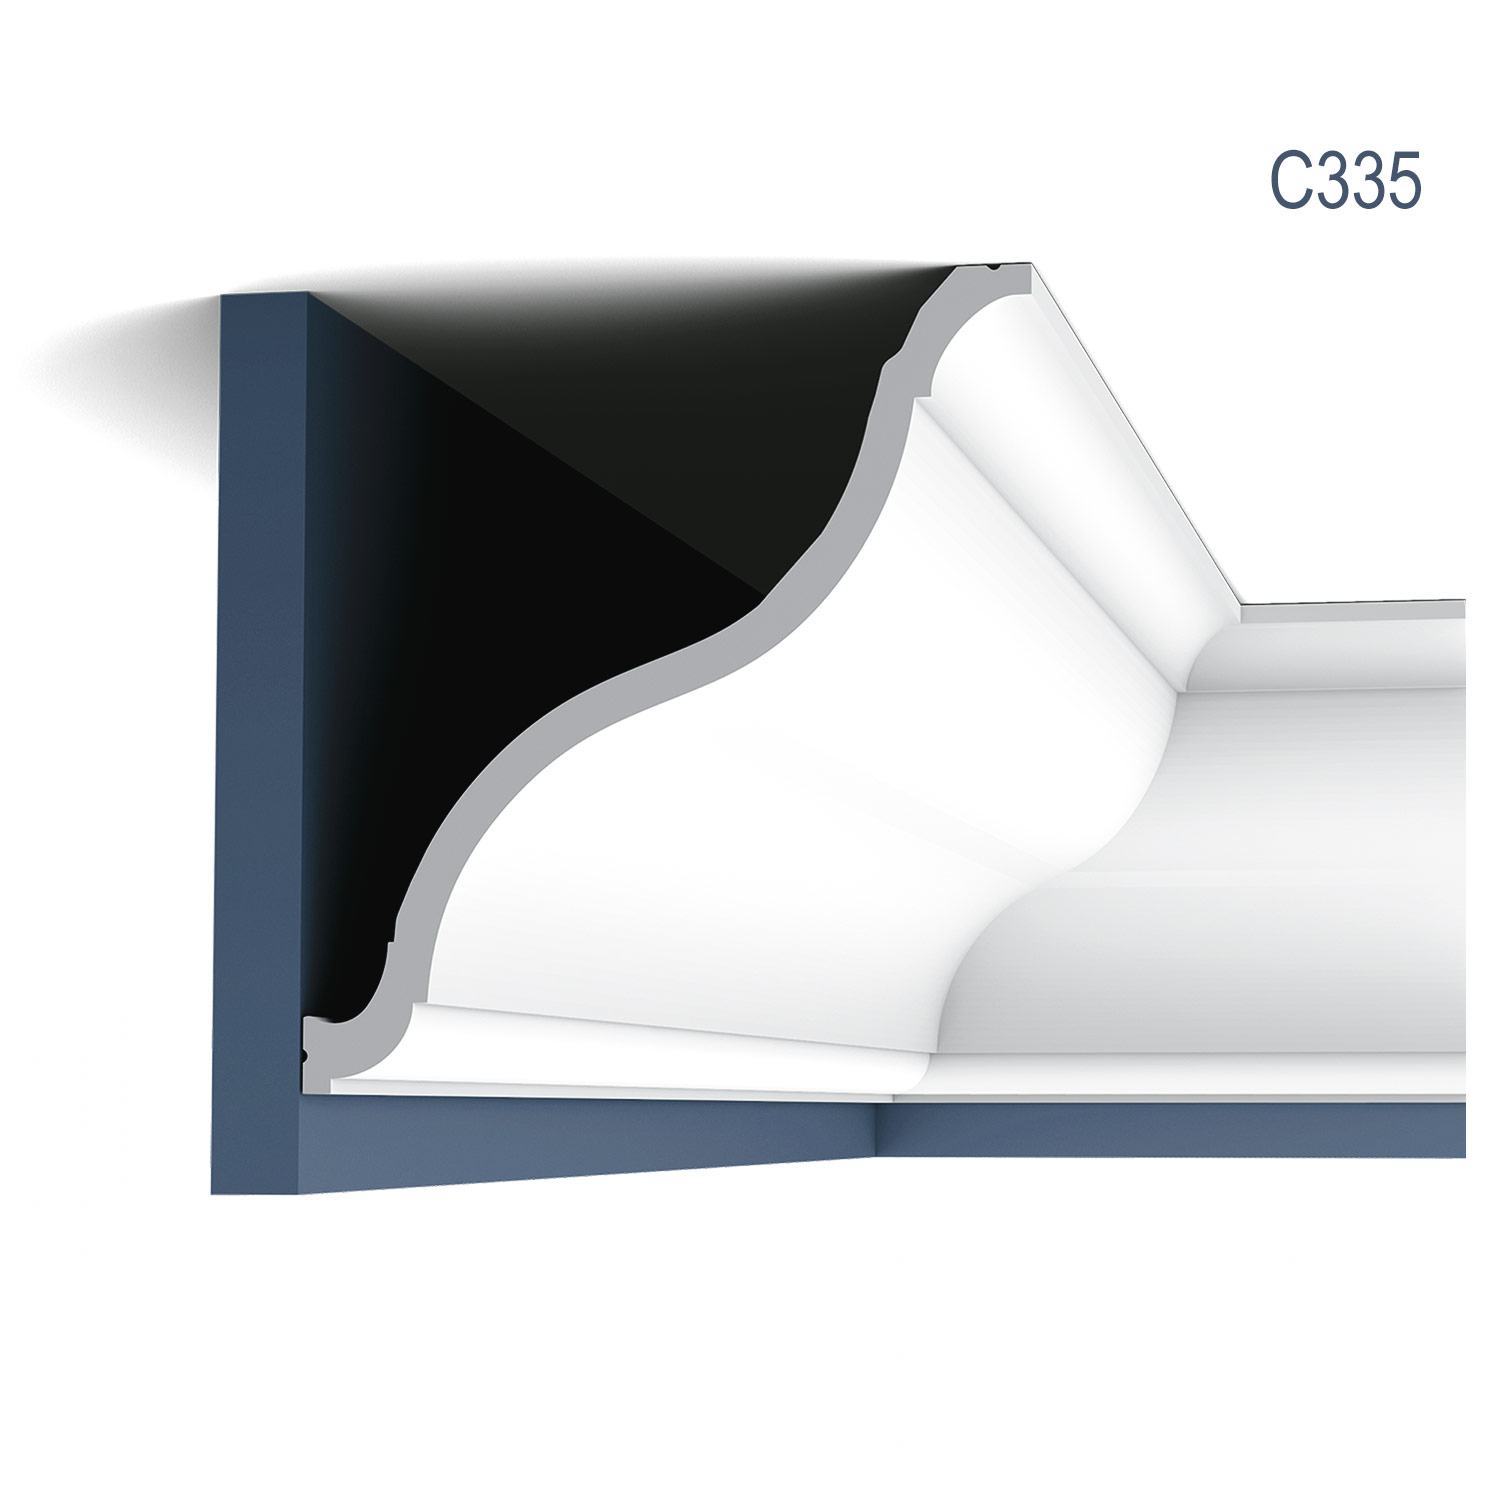 Cornisa Luxxus C335, Dimensiuni: 200 X 22.2 X 20.2 cm, Orac Decor